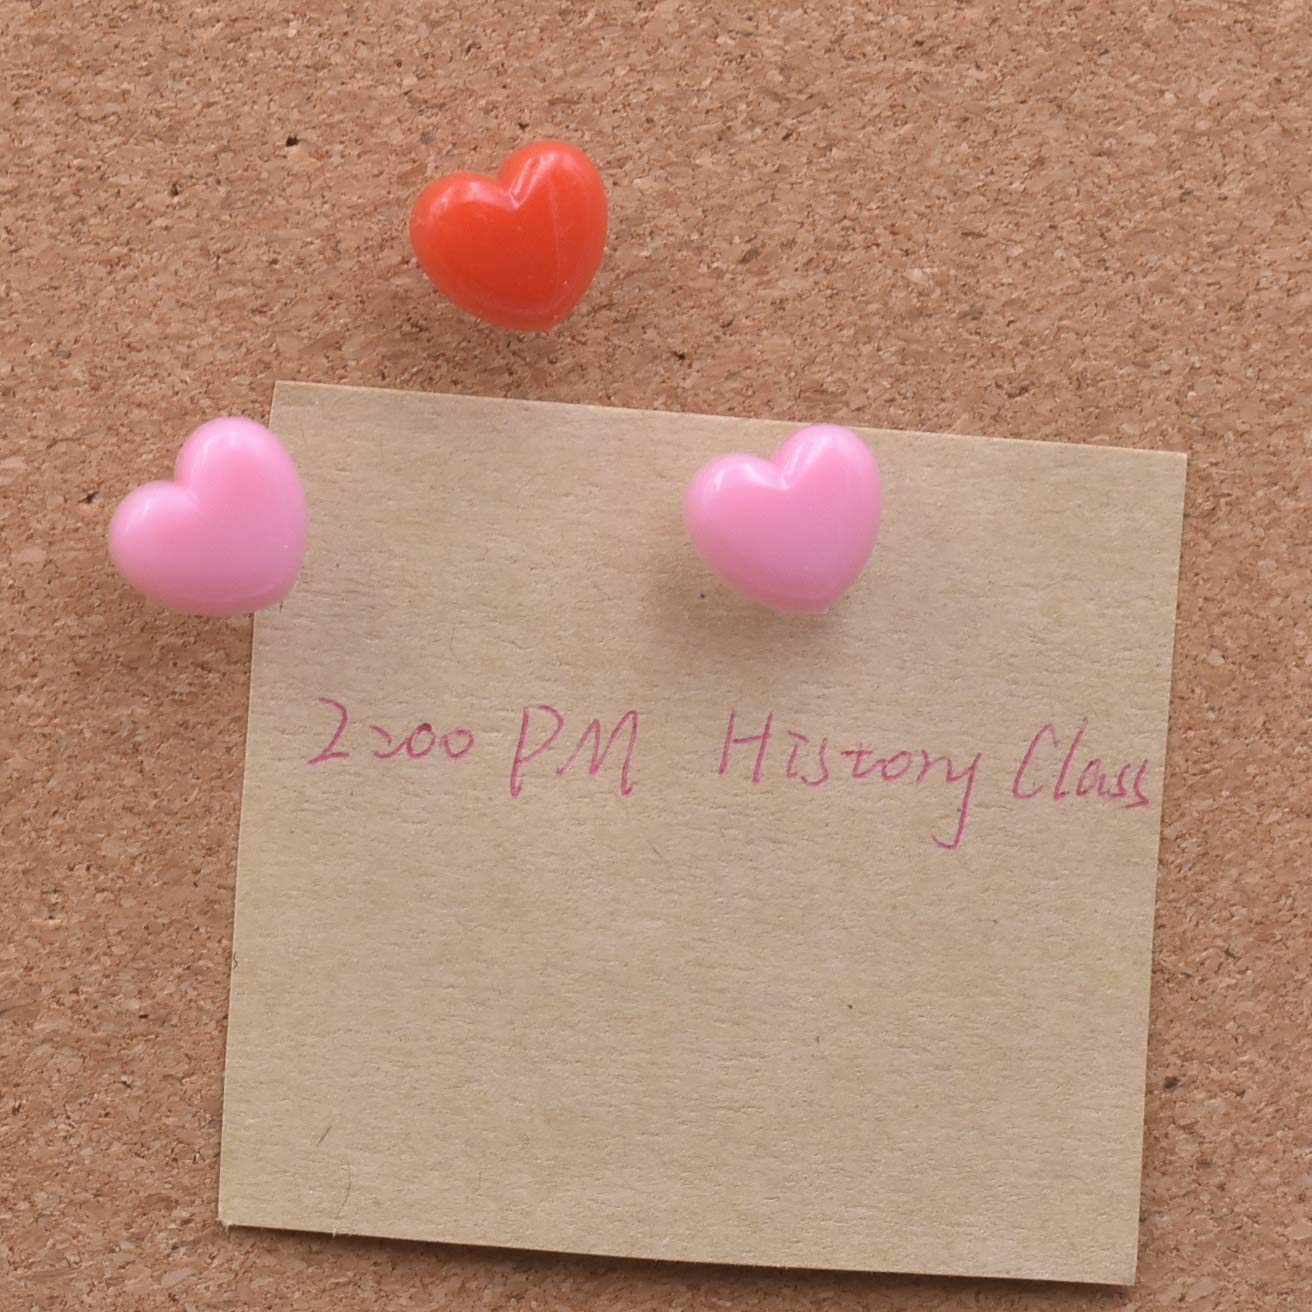 100pcs Heart Push Pins, Cute Push Pins Decorative Pink Pins Drawing Pins for Photos Wall, Maps, Bulletin Board, Cork Boards